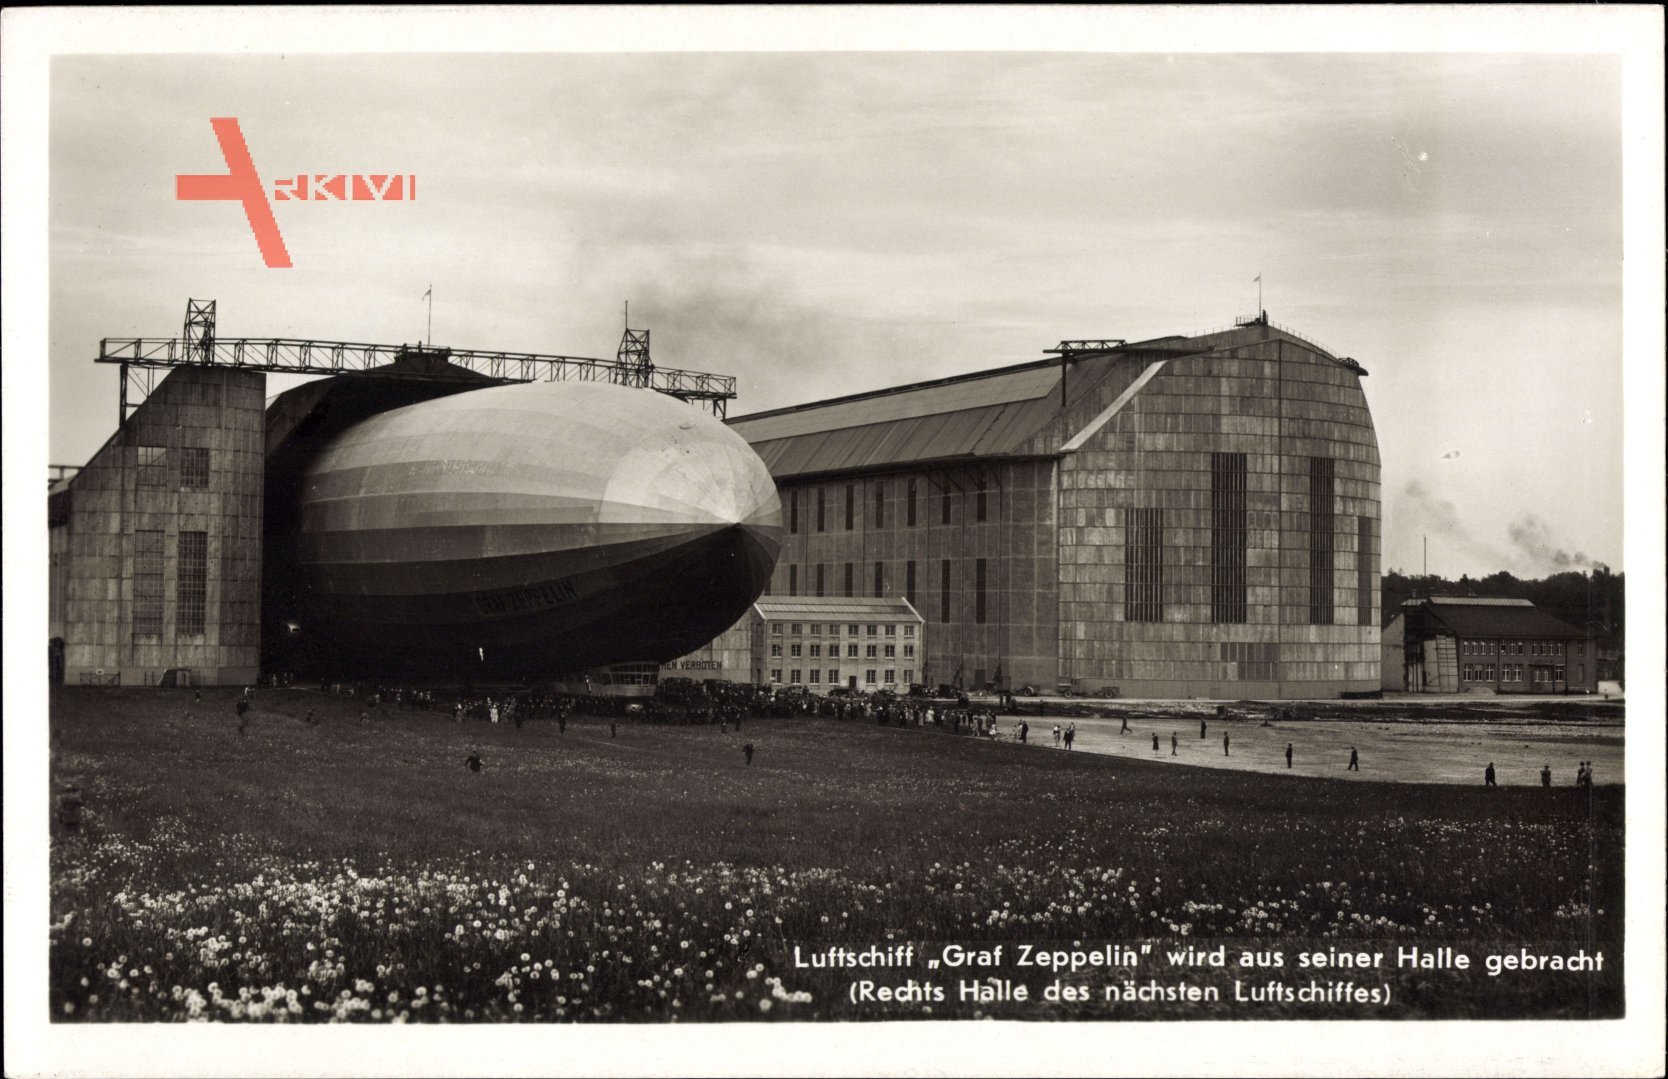 Luftschiff Graf Zeppelin, LZ 127, Luftschiffhalle, Ausfahrt